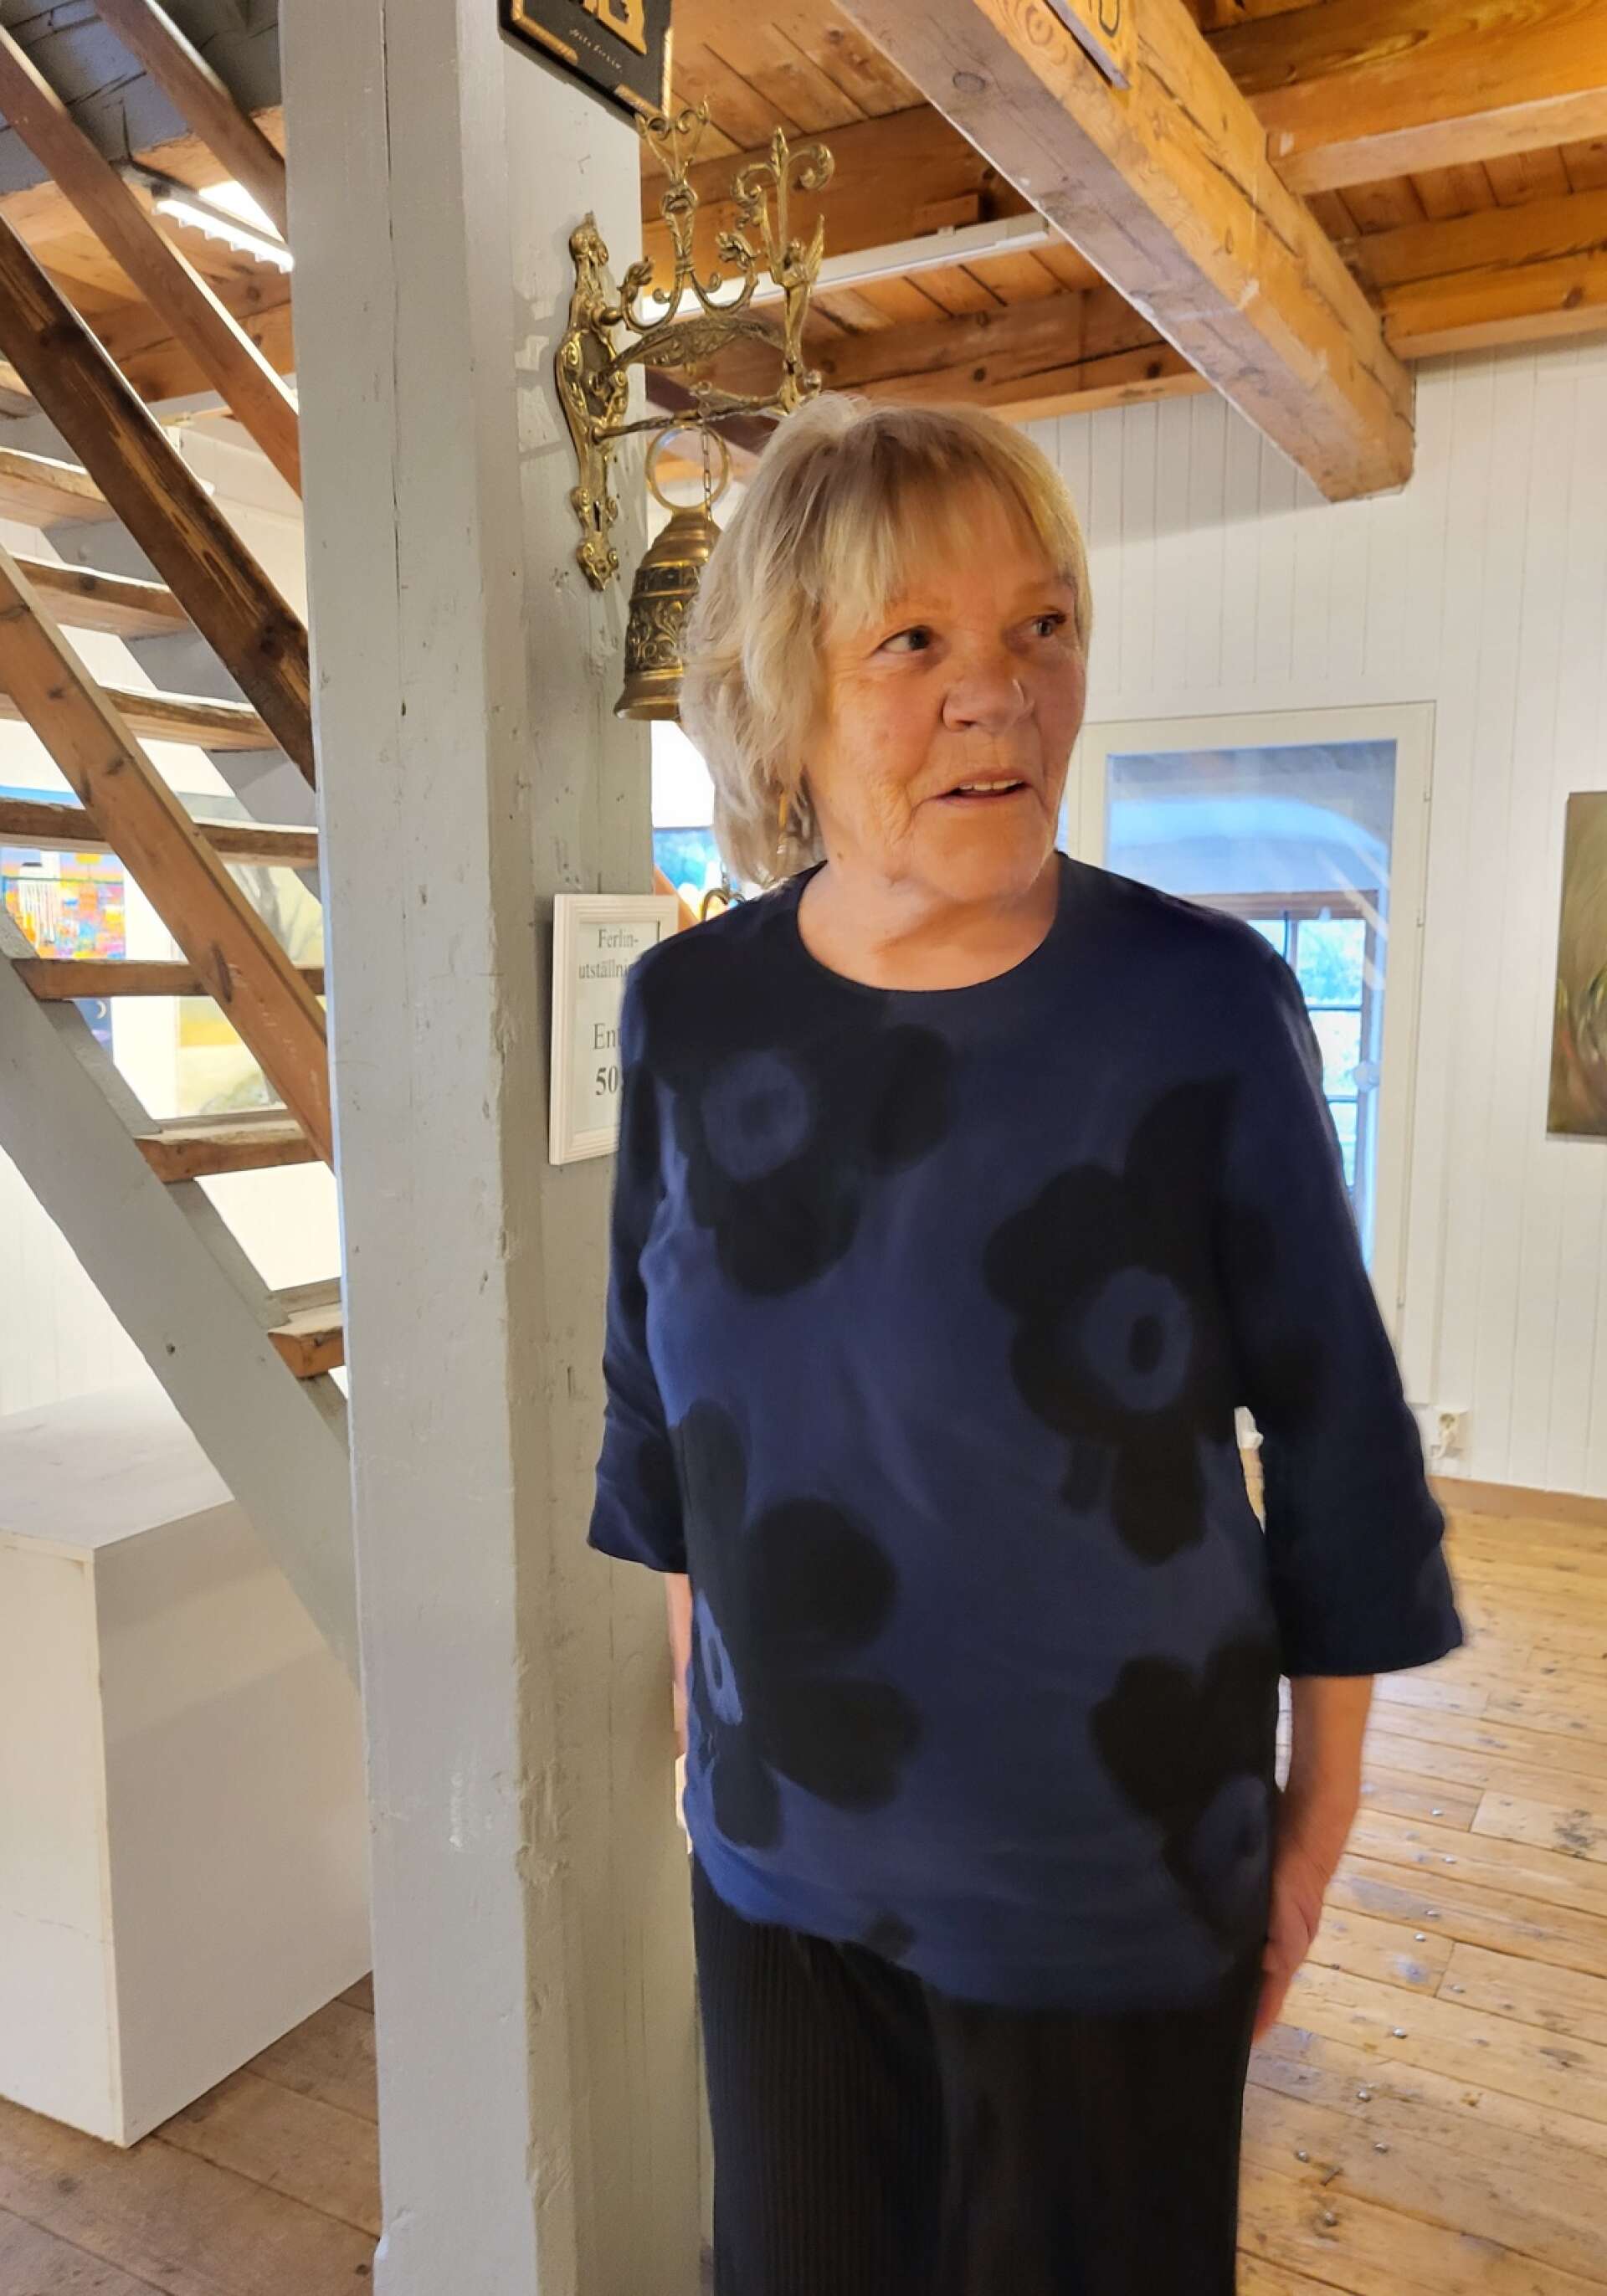 Konstnären Ulla Grönqvist hyllades dubbelt av Filipstads gille  – dels blev hon utsedd till Årets kulturprofil 2023, dels fick hon motta en förtjänstmedalj för lång och trogen tjänst i gillet.